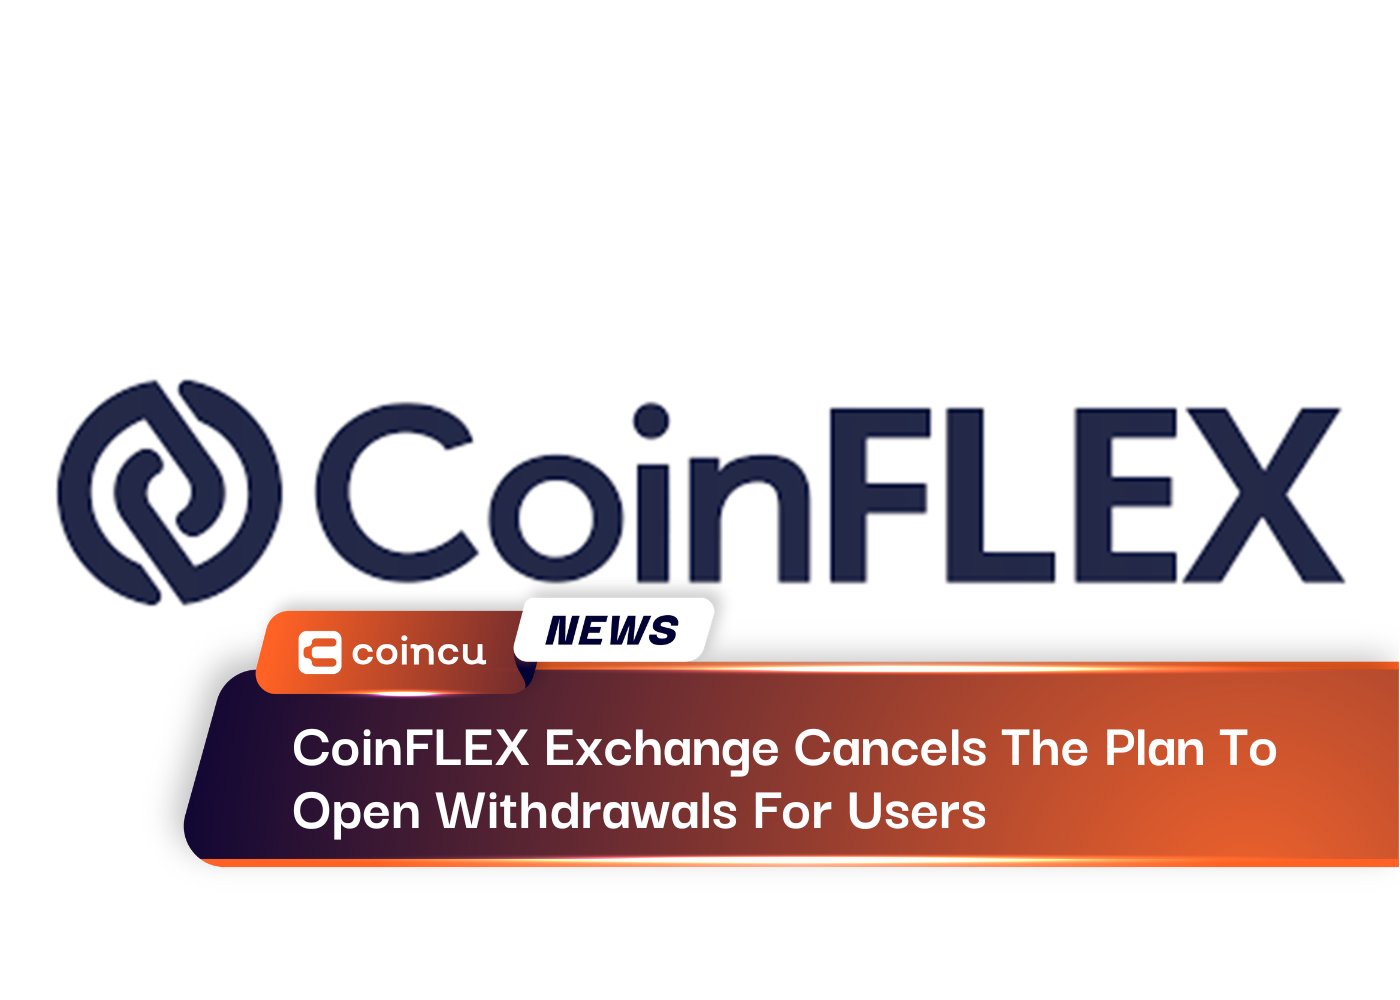 Sàn giao dịch CoinFLEX hủy kế hoạch mở rút tiền cho người dùng